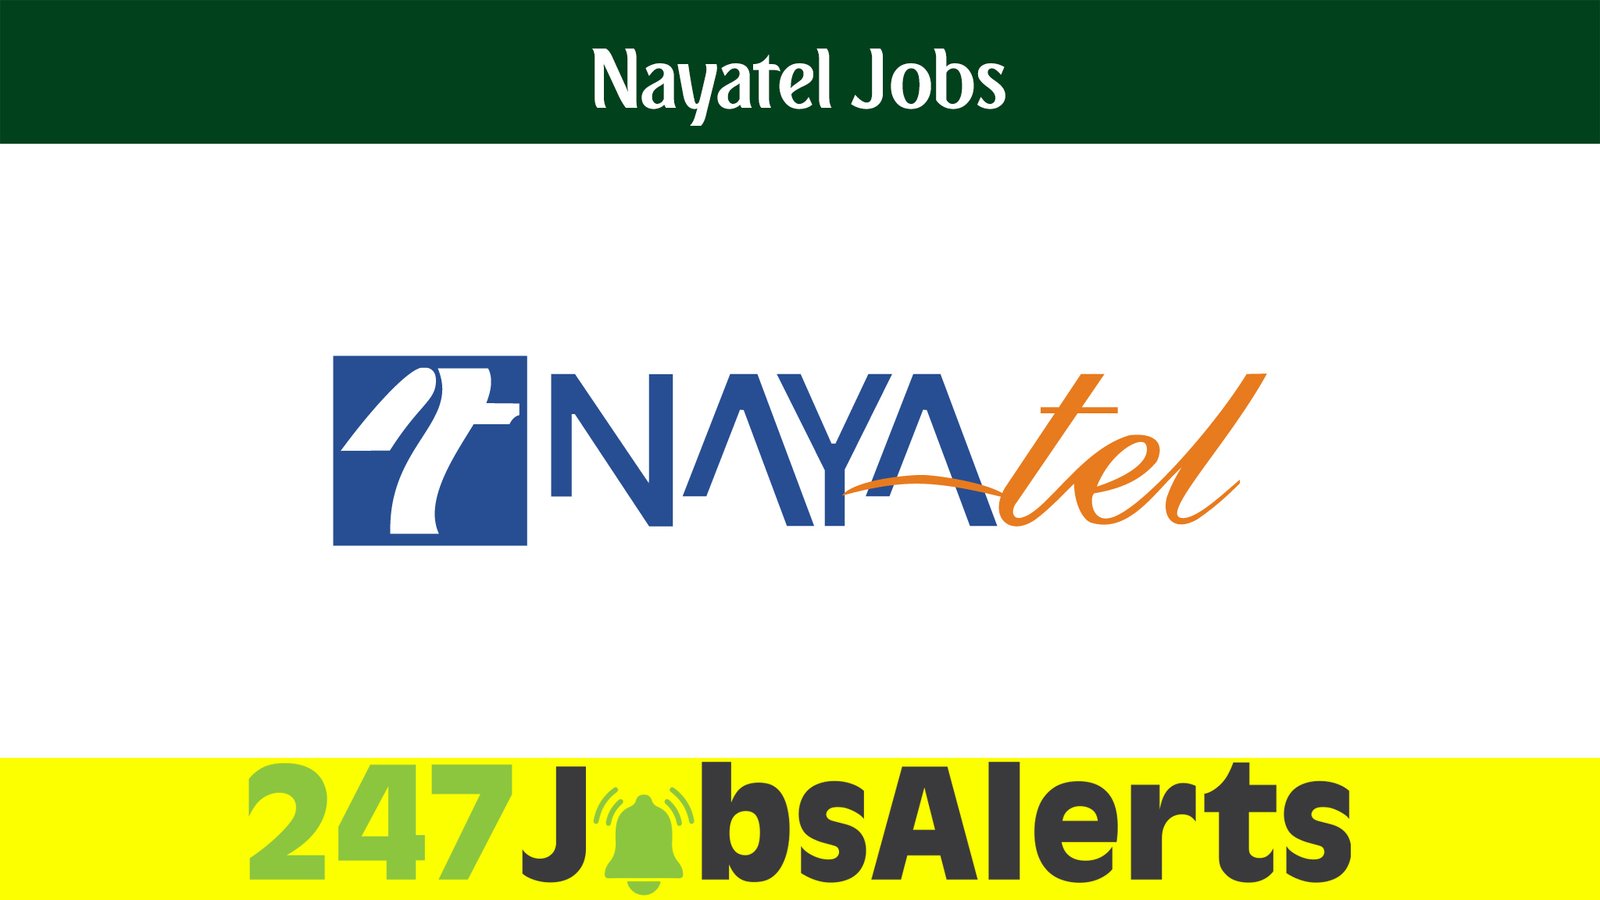 Nayatel Jobs